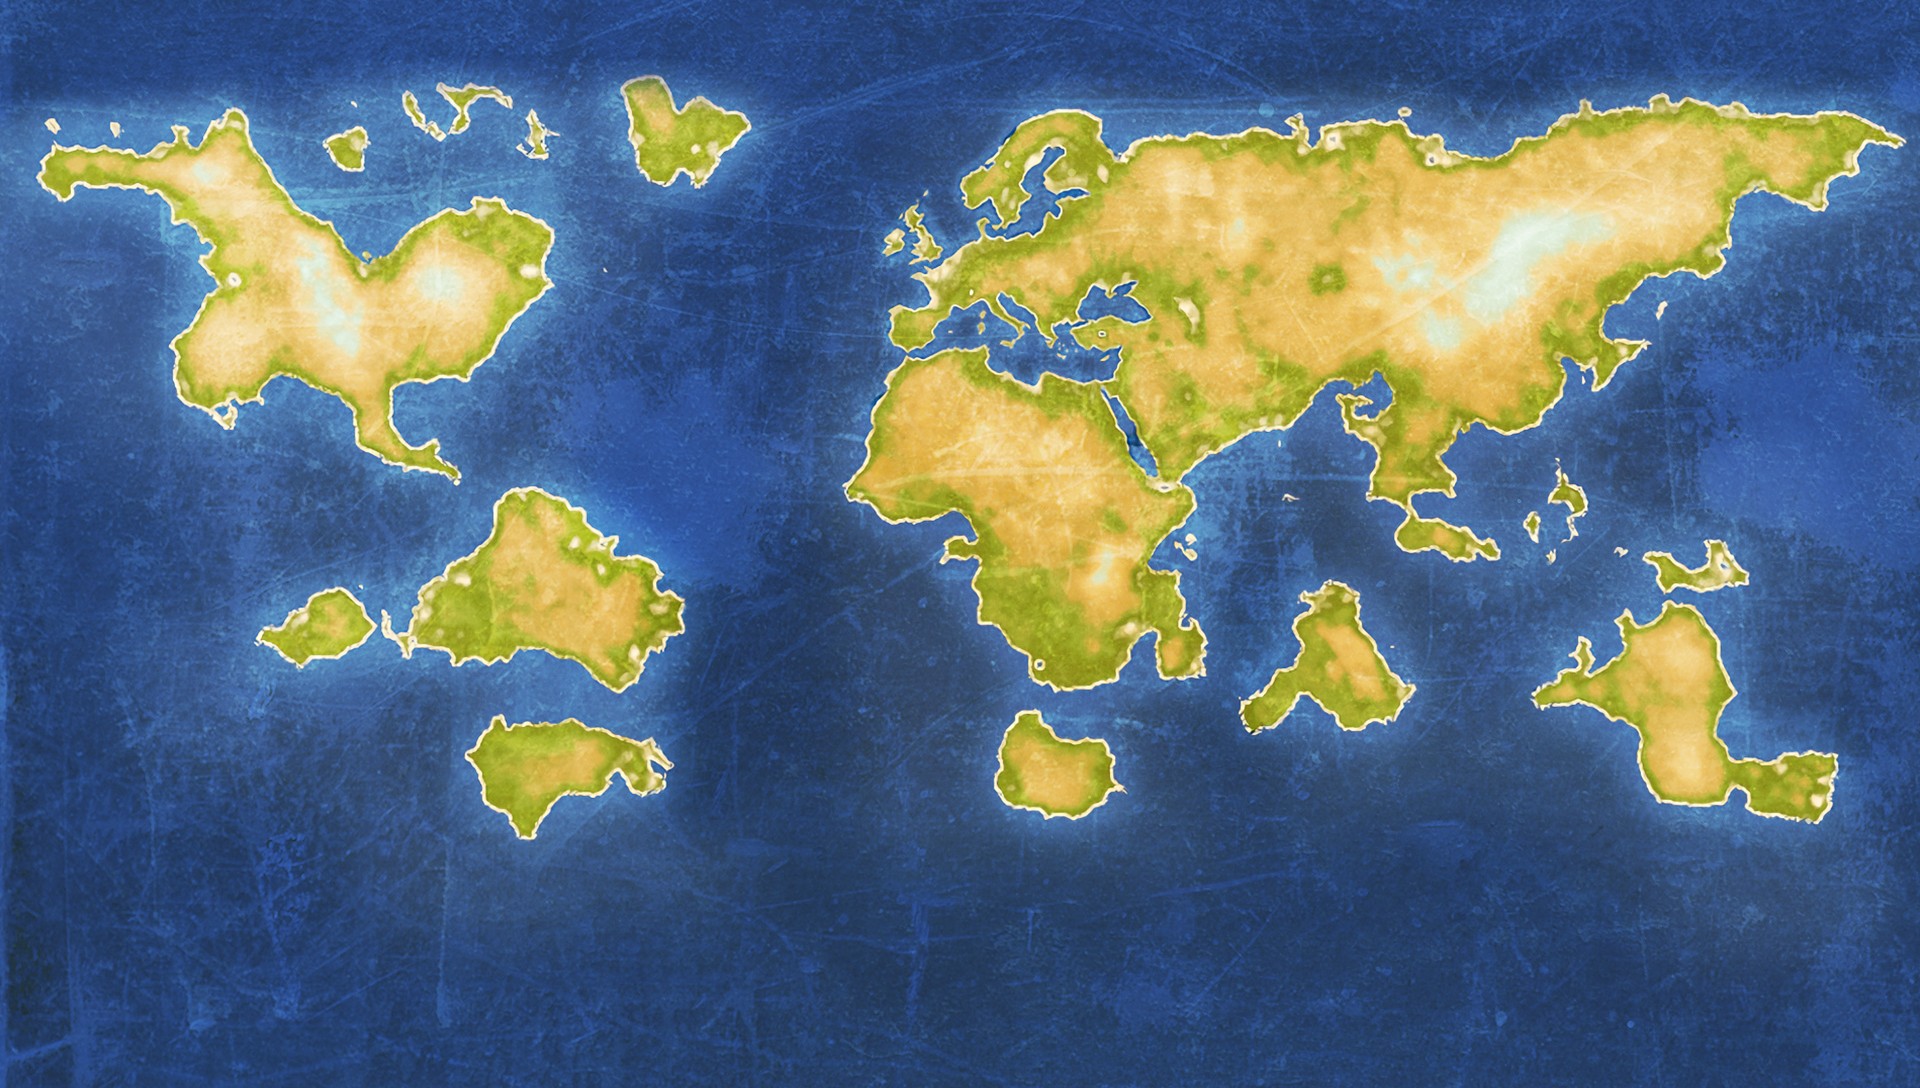 画像集no 010 世界地図作成シム Neo Atlas 1469 のpc版が 17年4月21日に発売決定 プレイヤーの足跡を動画で振り返る新機能が追加に